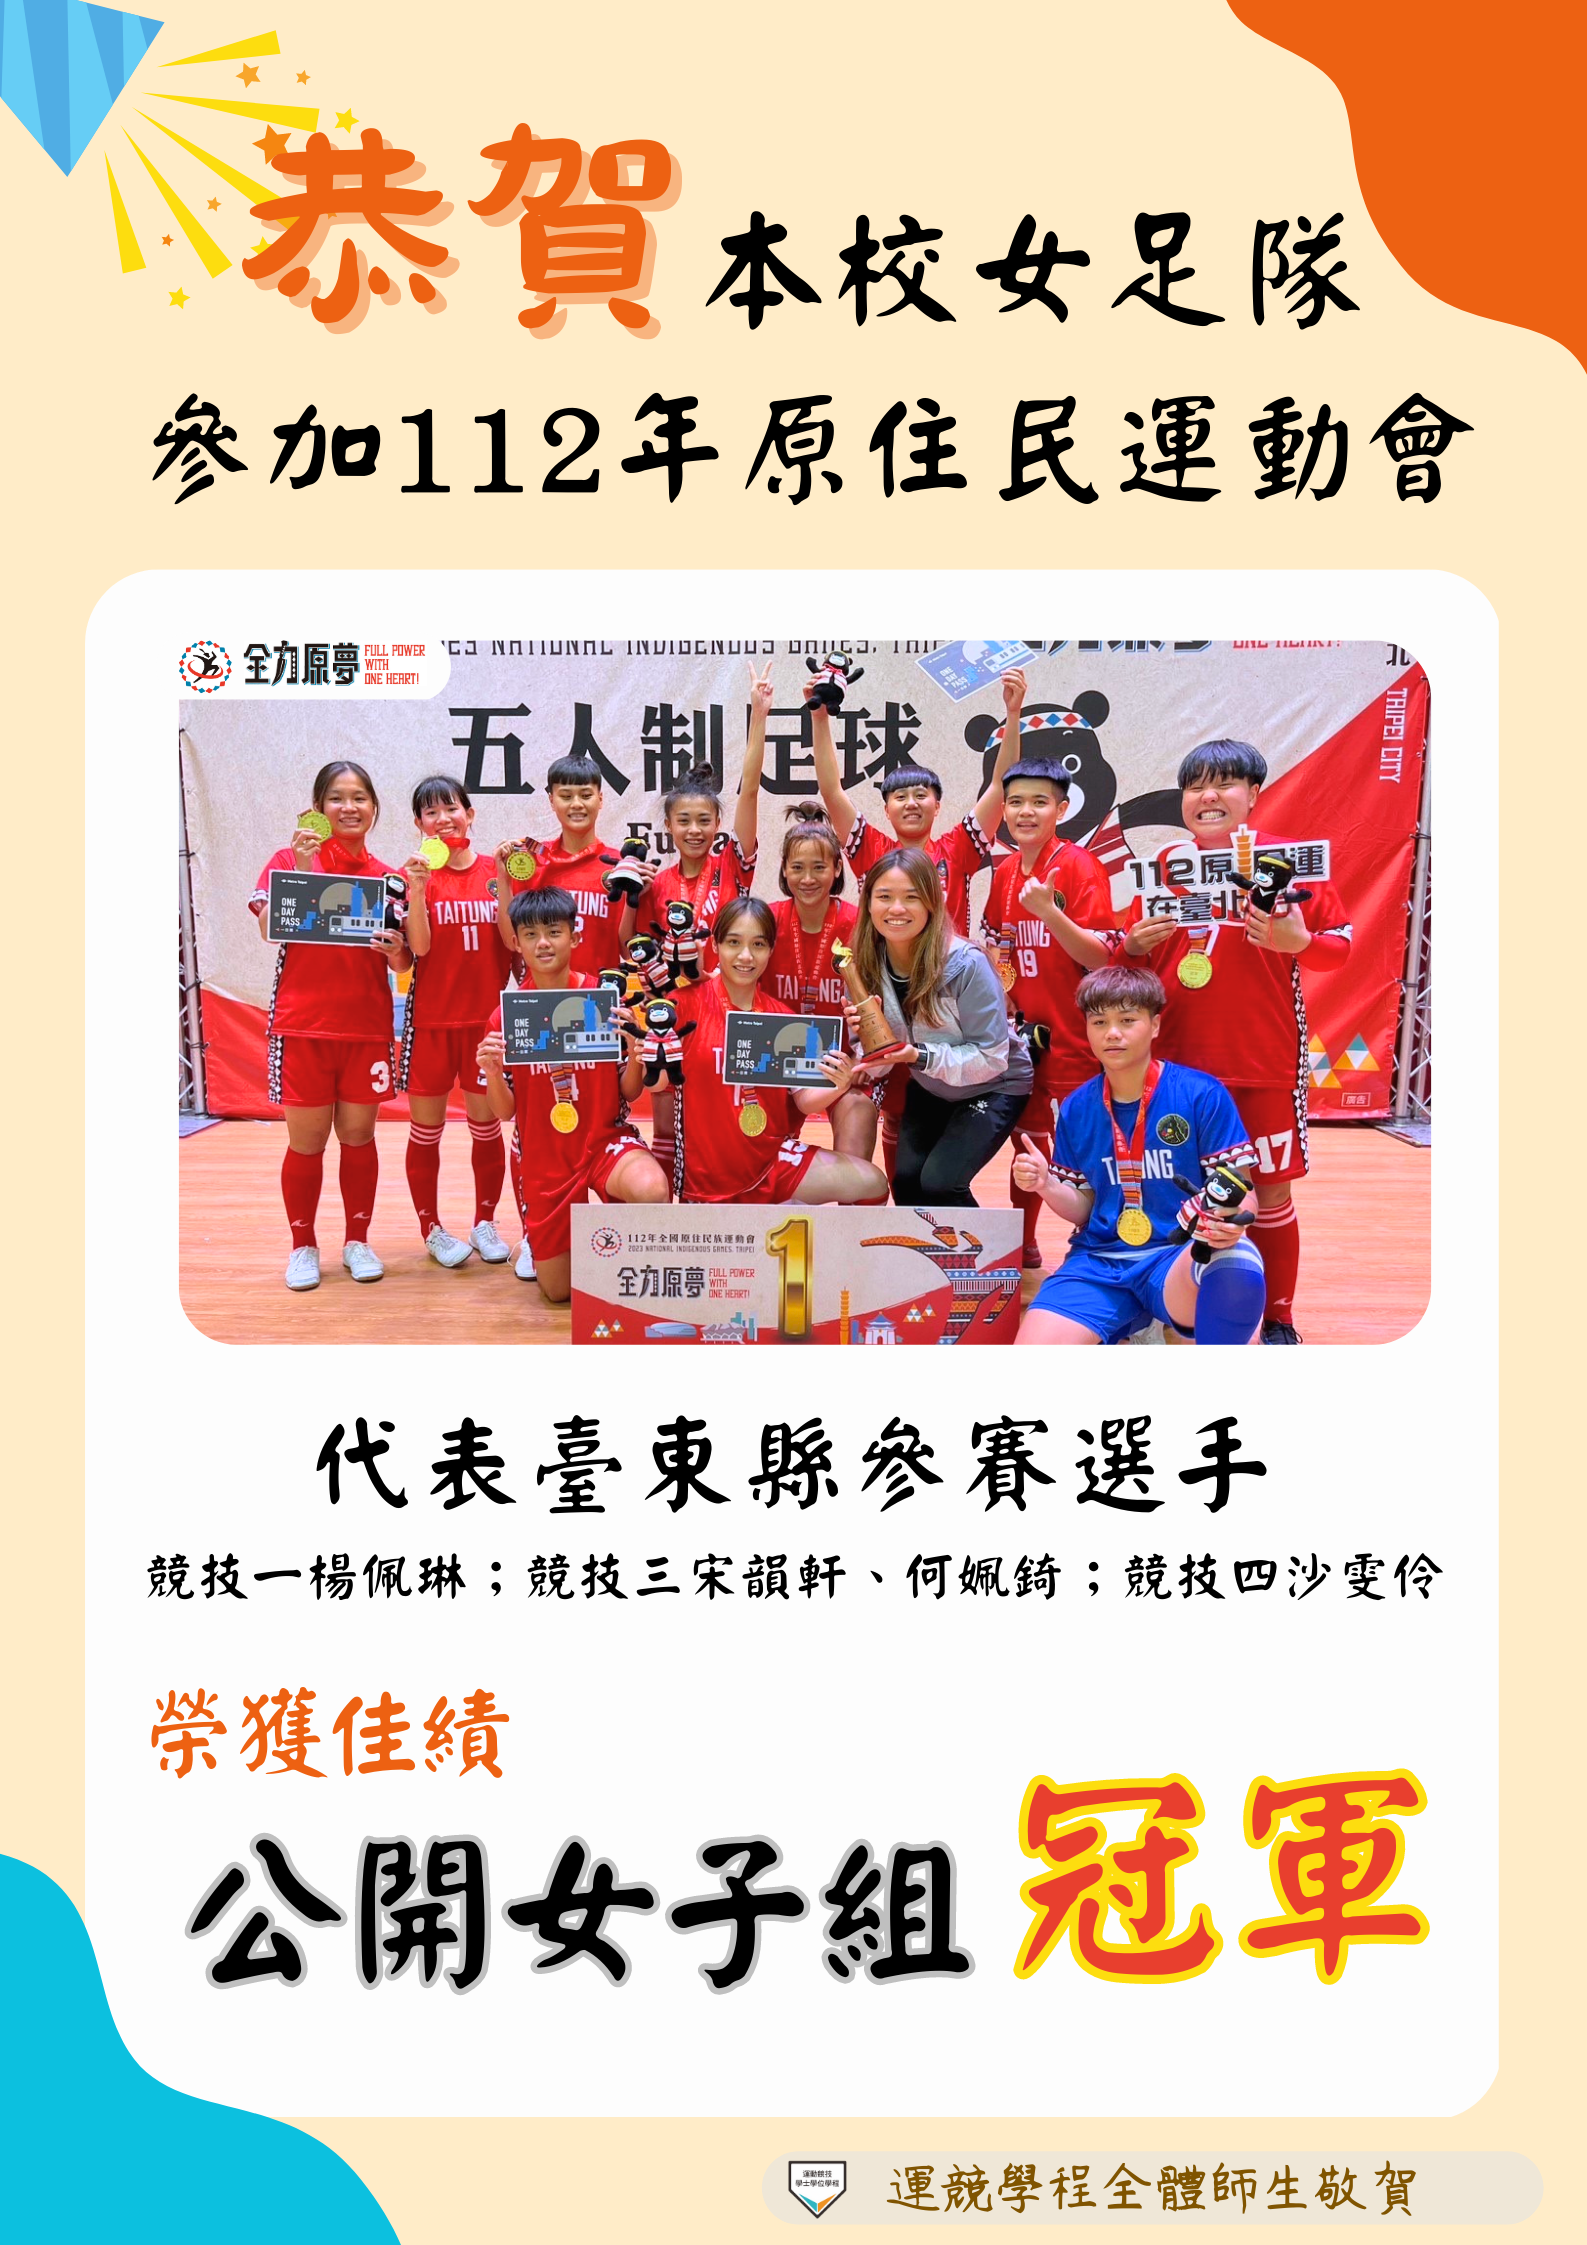 狂賀!!本校女足隊代表台東縣參加112年全國原住民運動會榮獲佳績!!👏👏👏